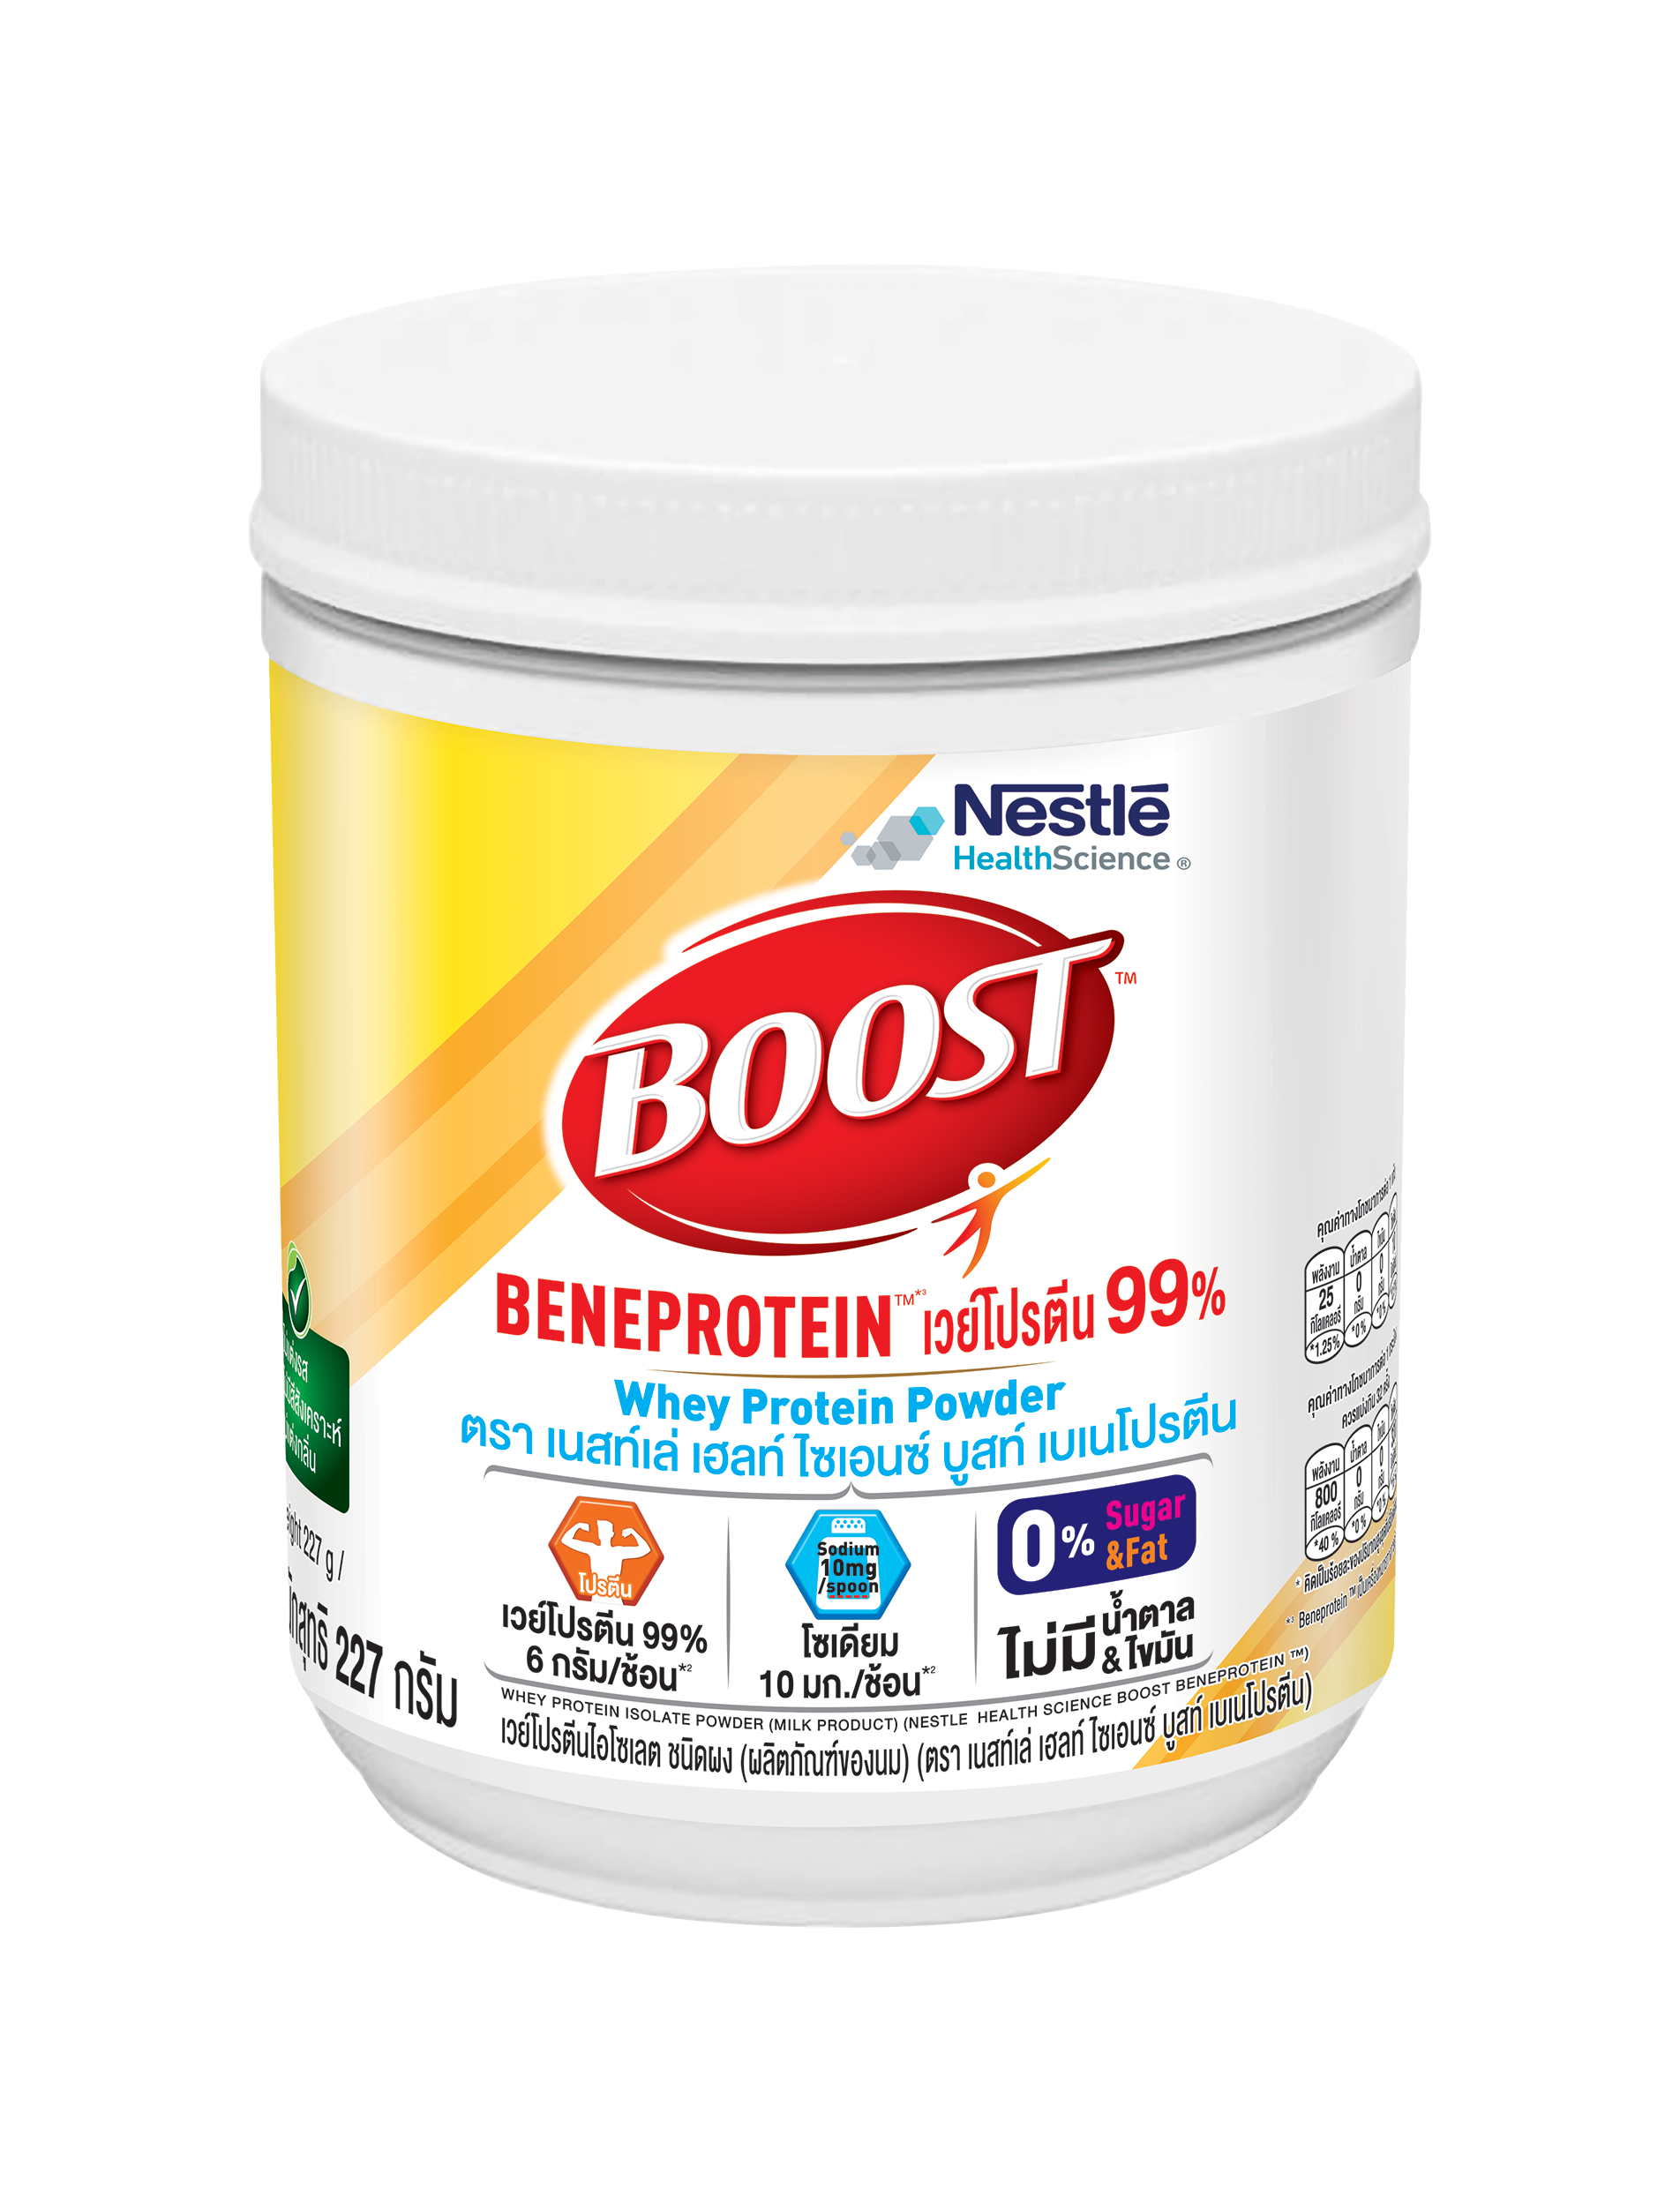 ฺBoost Beneprotein บูสท์ เบเนโปรตีน อาหารเสริม ทางการแพทย์ โปรตีนเวย์ไอโซเลท โซเดียมต่ำ เสริมโปรตีน